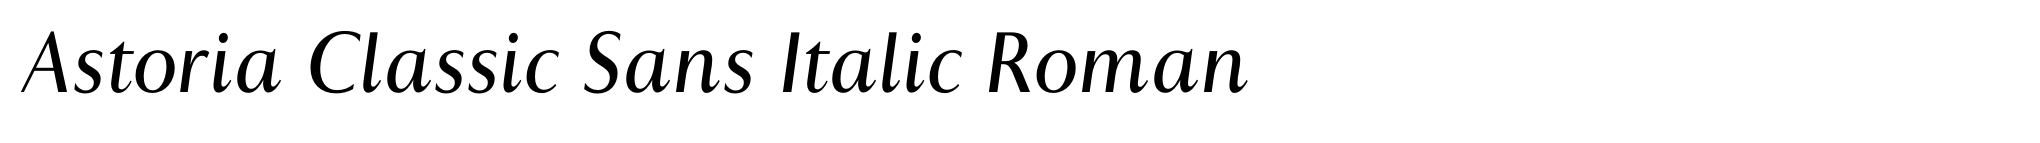 Astoria Classic Sans Italic Roman image